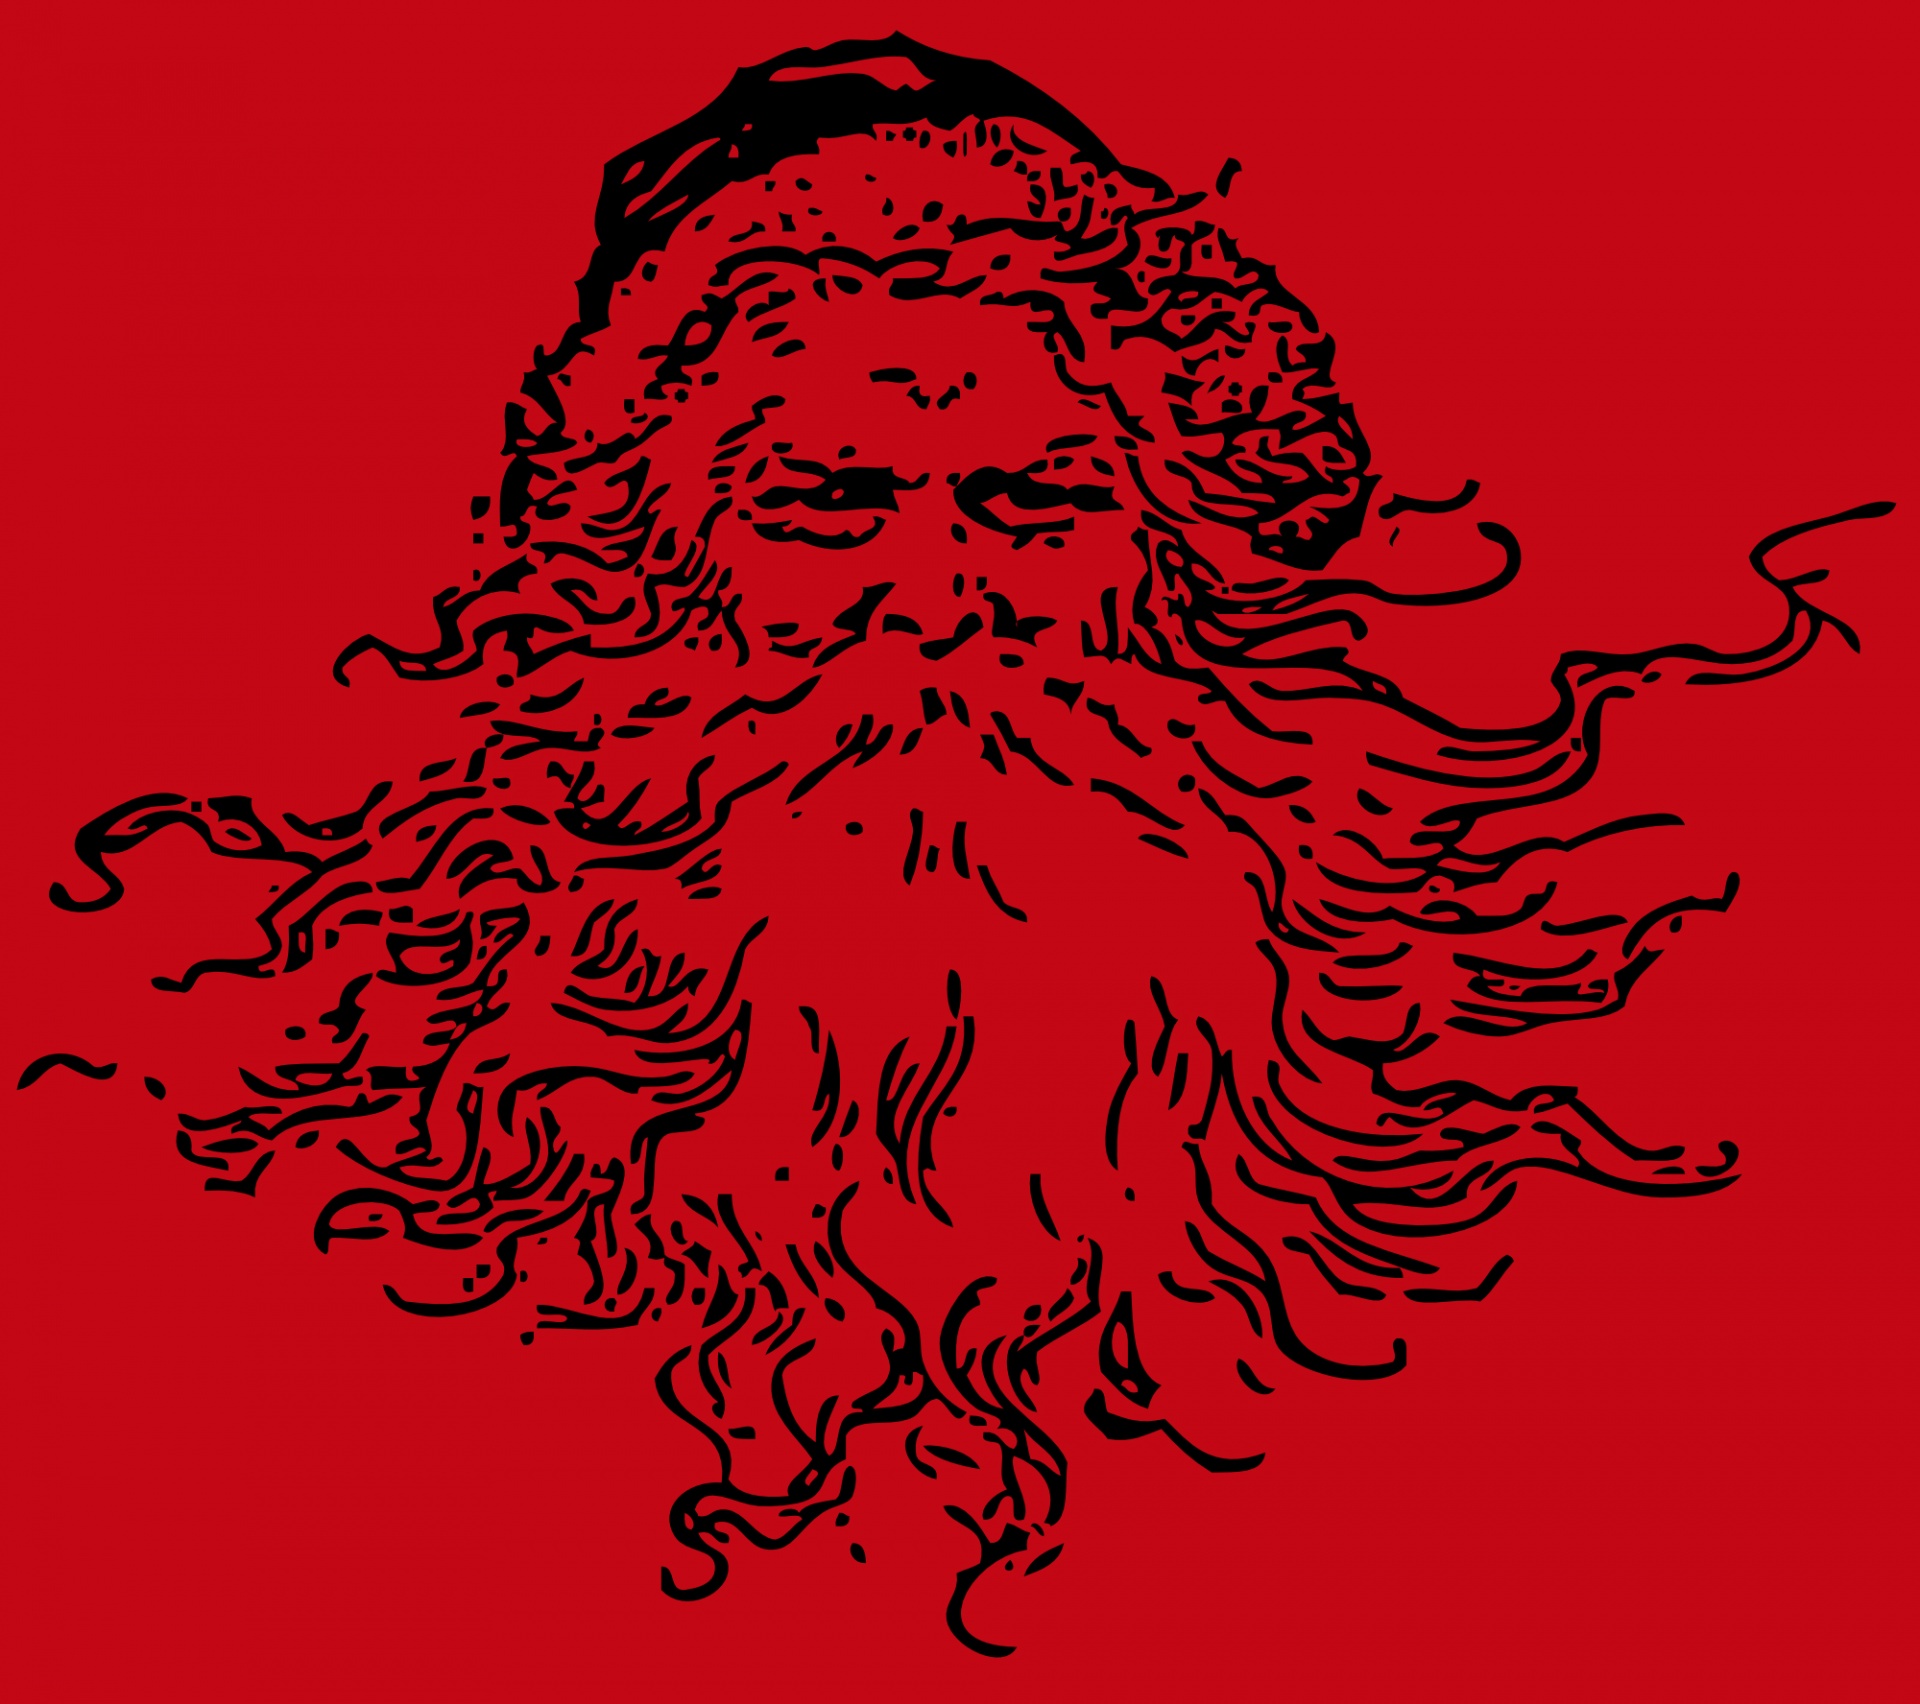 Papai Noel sério no vermelho